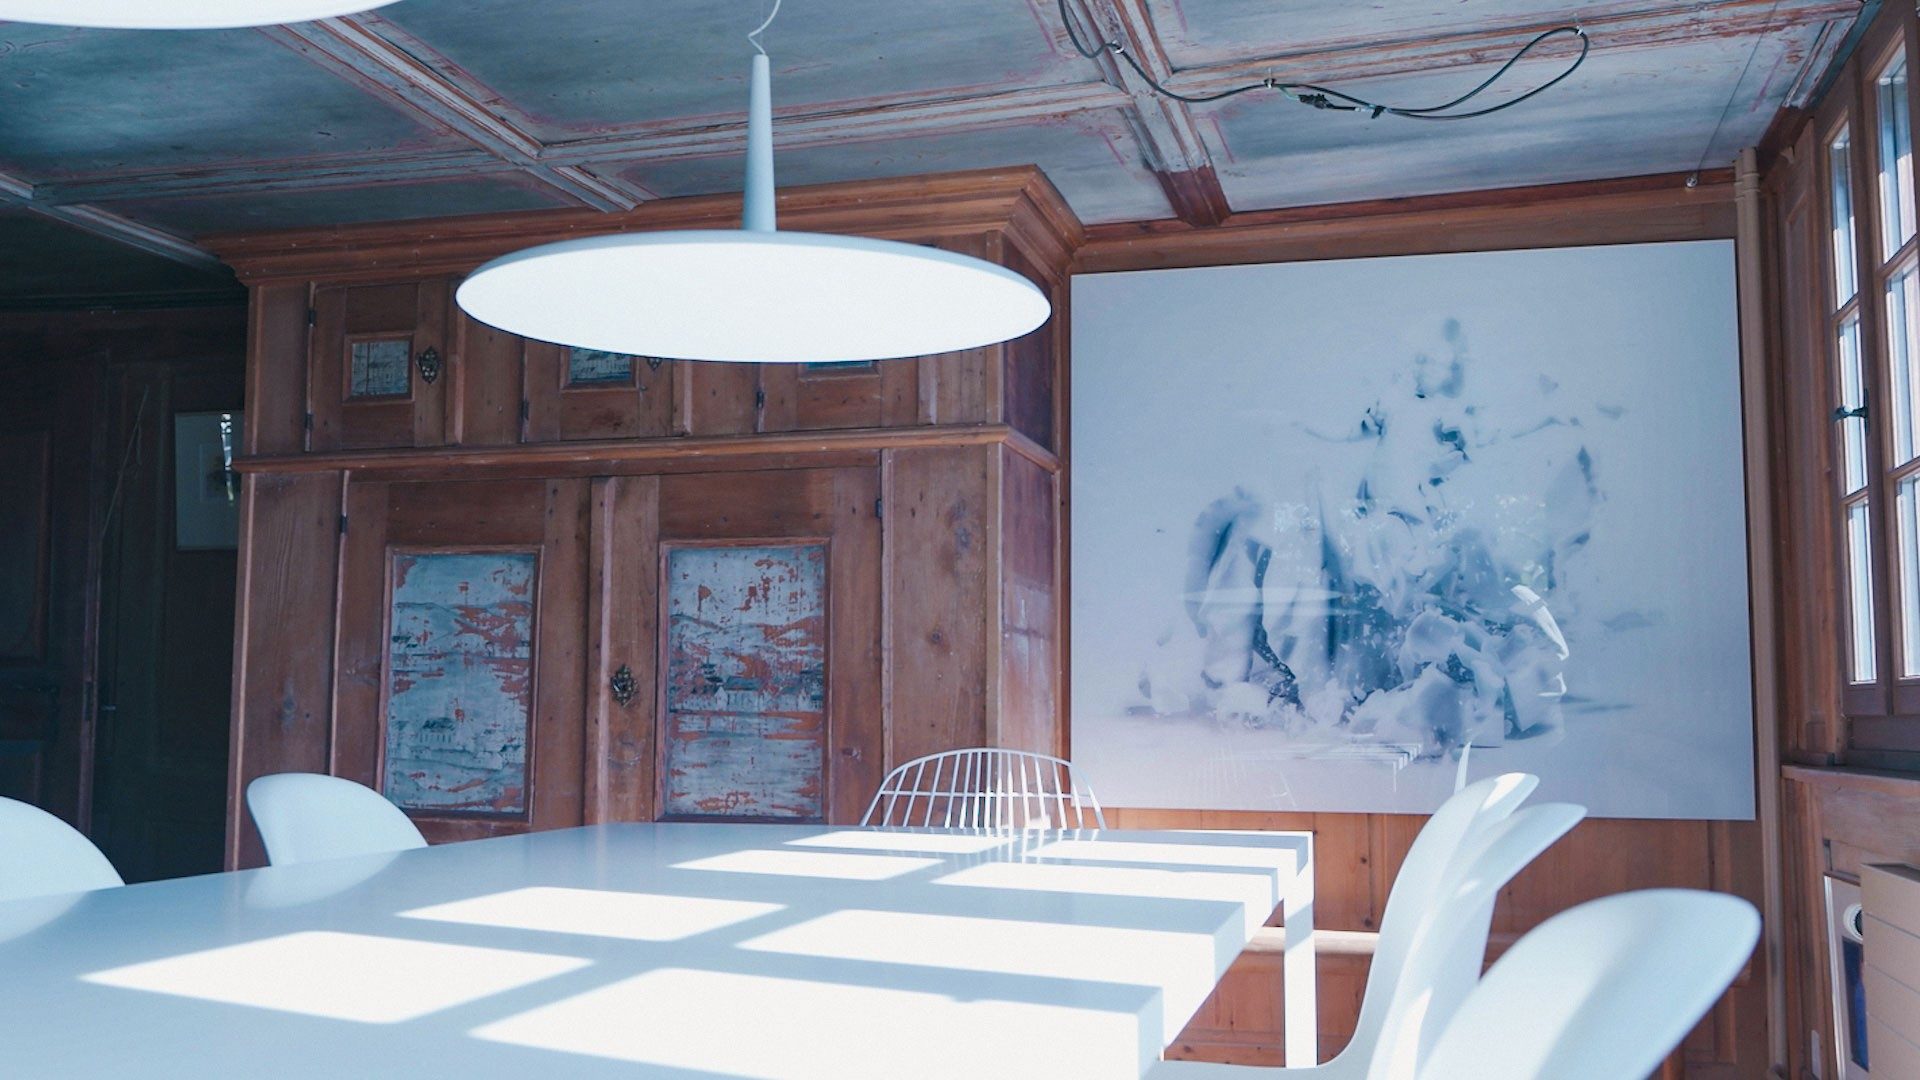 Une table blanche dans une pièce lambrissée, avec des murs arborant des œuvres modernes.